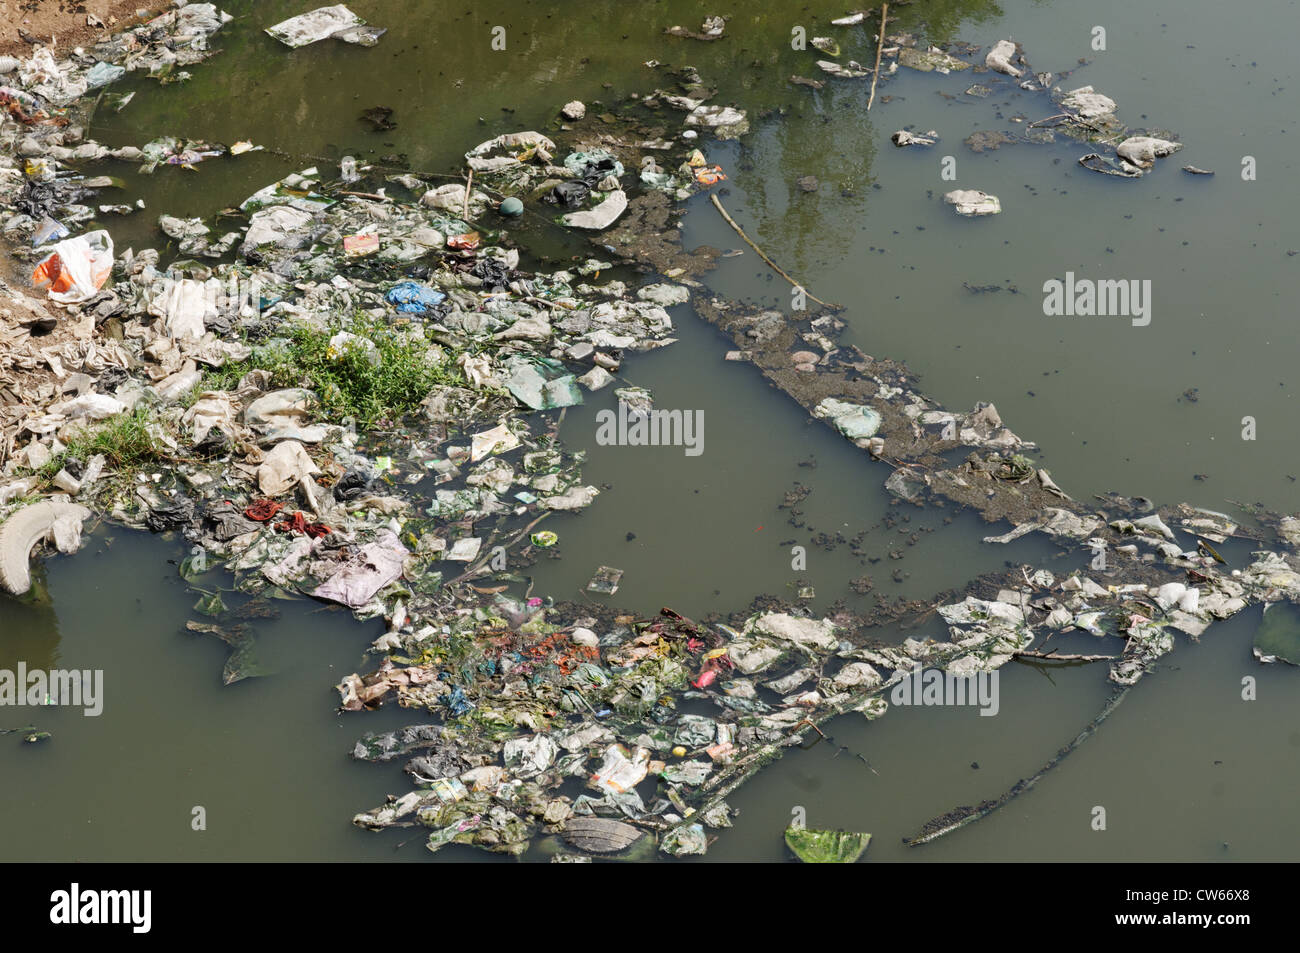 A Filthy rivière polluée en Inde Banque D'Images